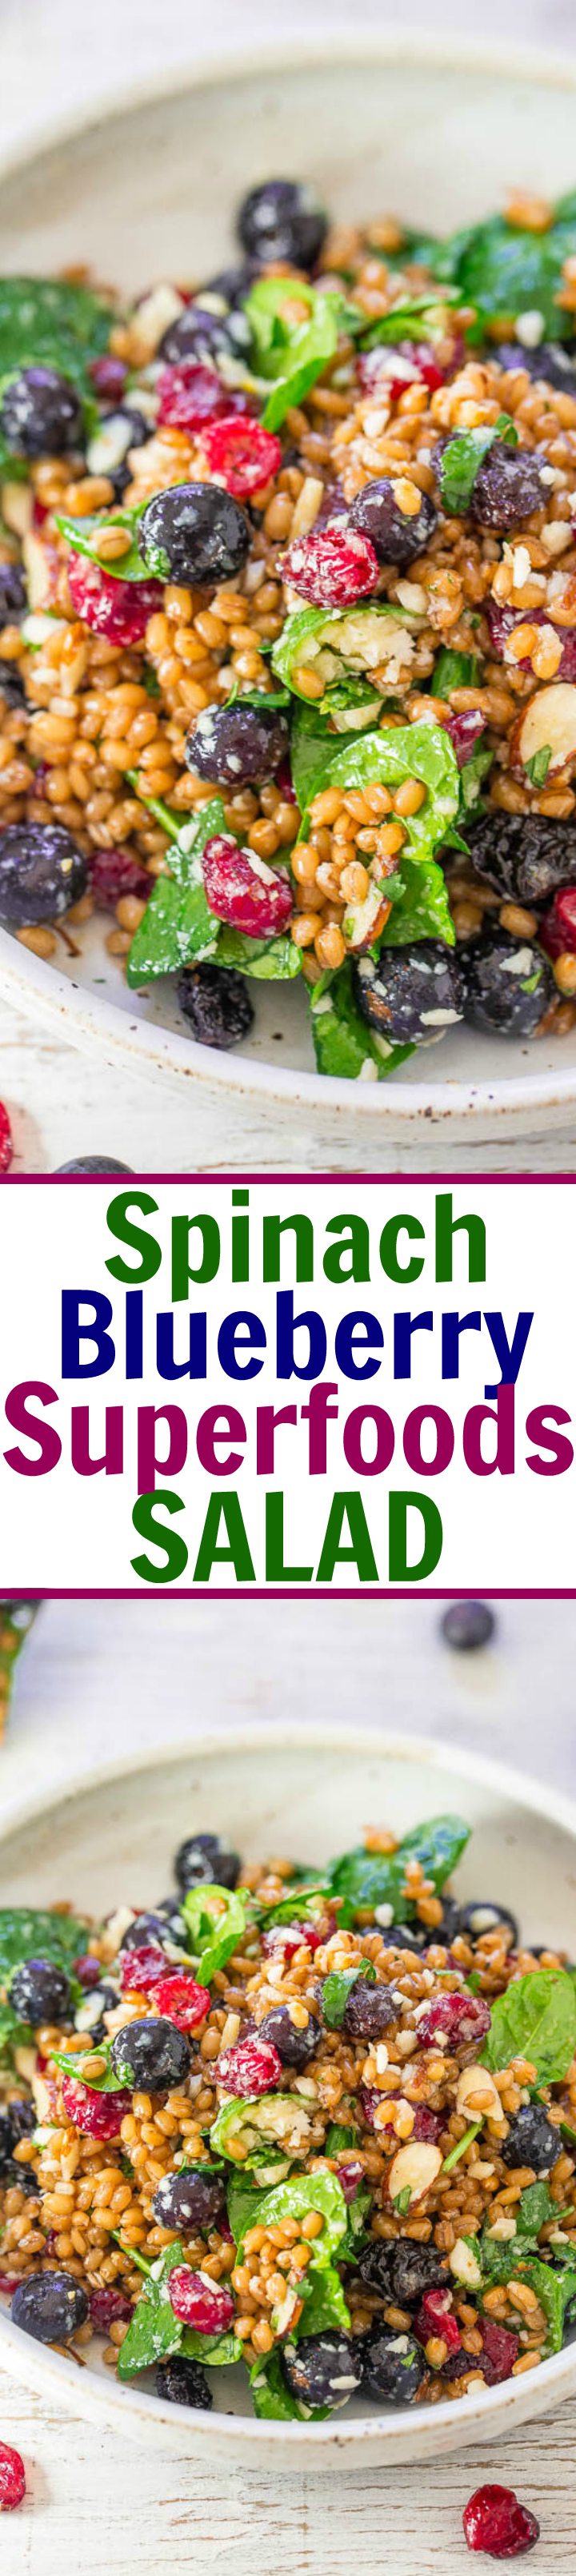 Spinat Blueberry Superfoods Salat - So viele Texturen und Aromen in diesem herzhaften Salat voller SUPERFOODS! Spinat, Heidelbeeren, getrocknete Preiselbeeren, Mandeln und vieles mehr! EINFACH, befriedigend, gesund und schmeckt fantastisch !! 